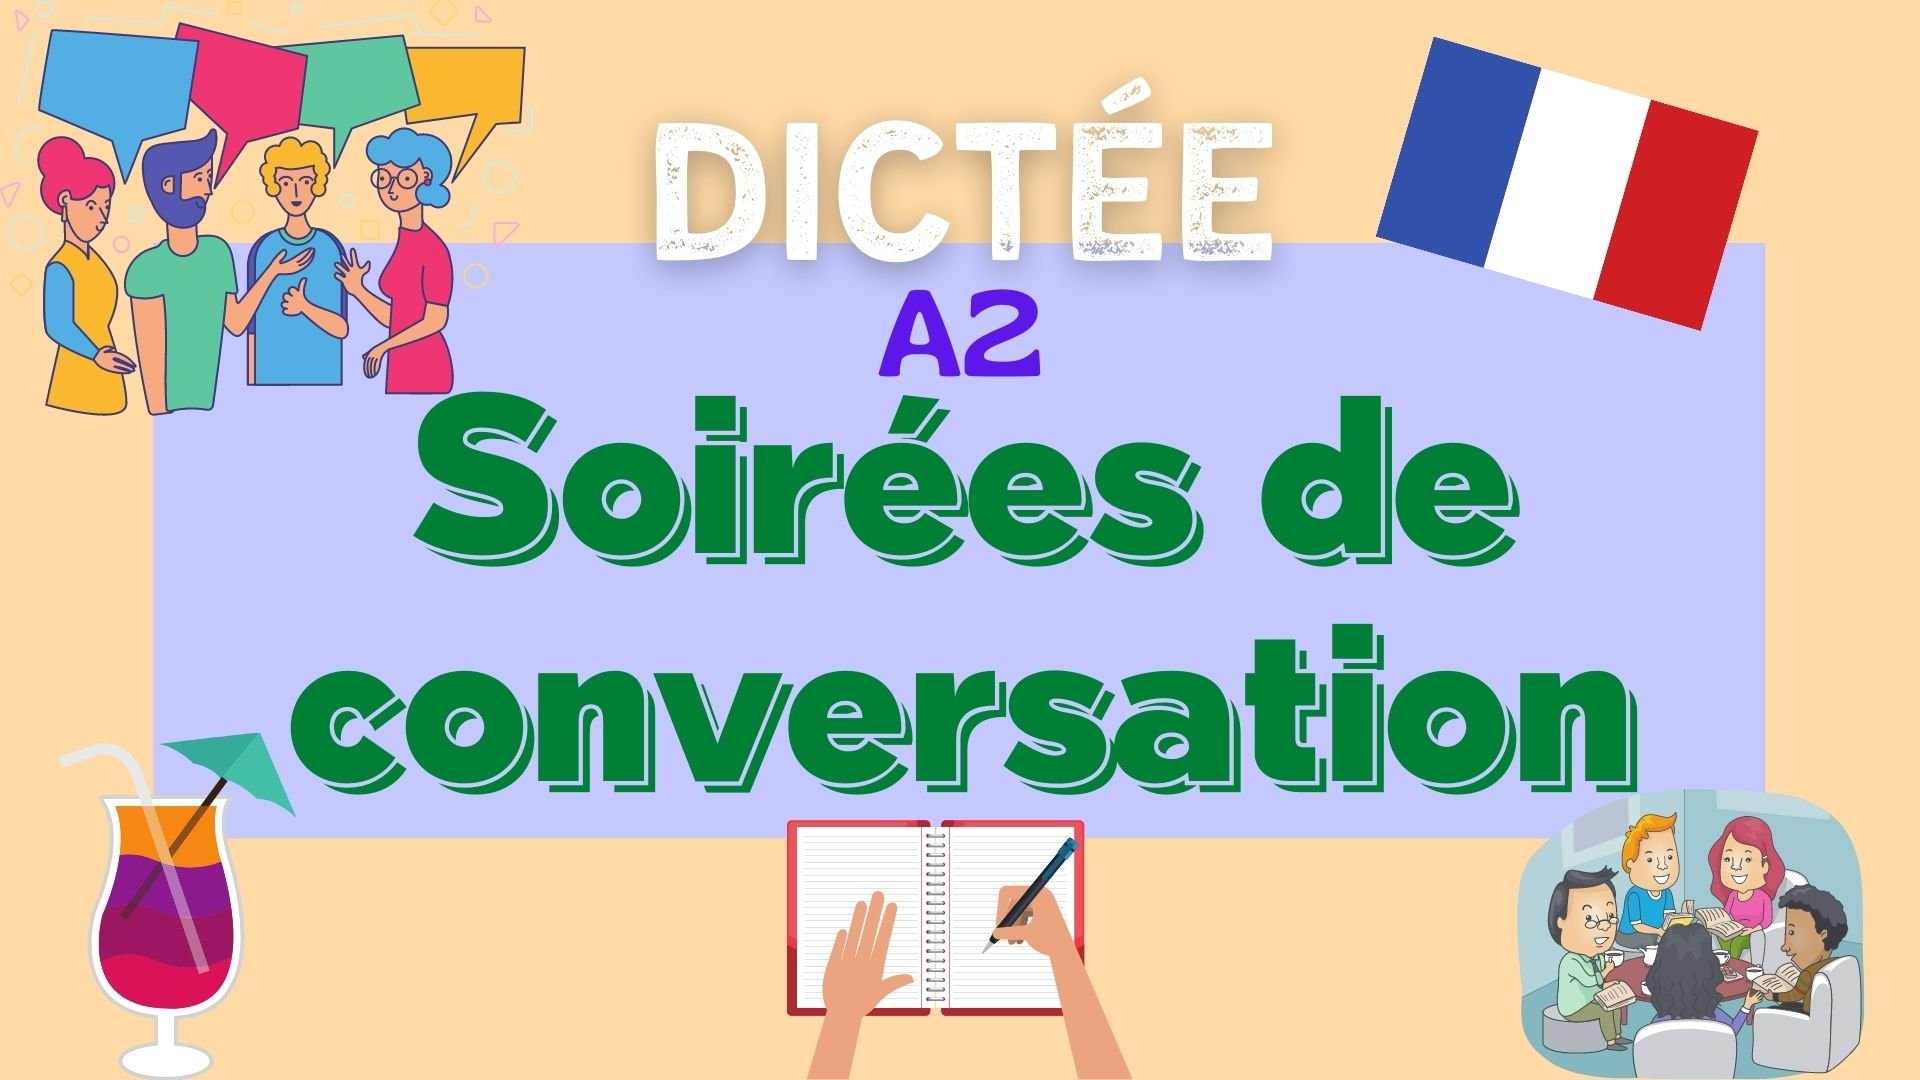 soirées de conversation - french dictation